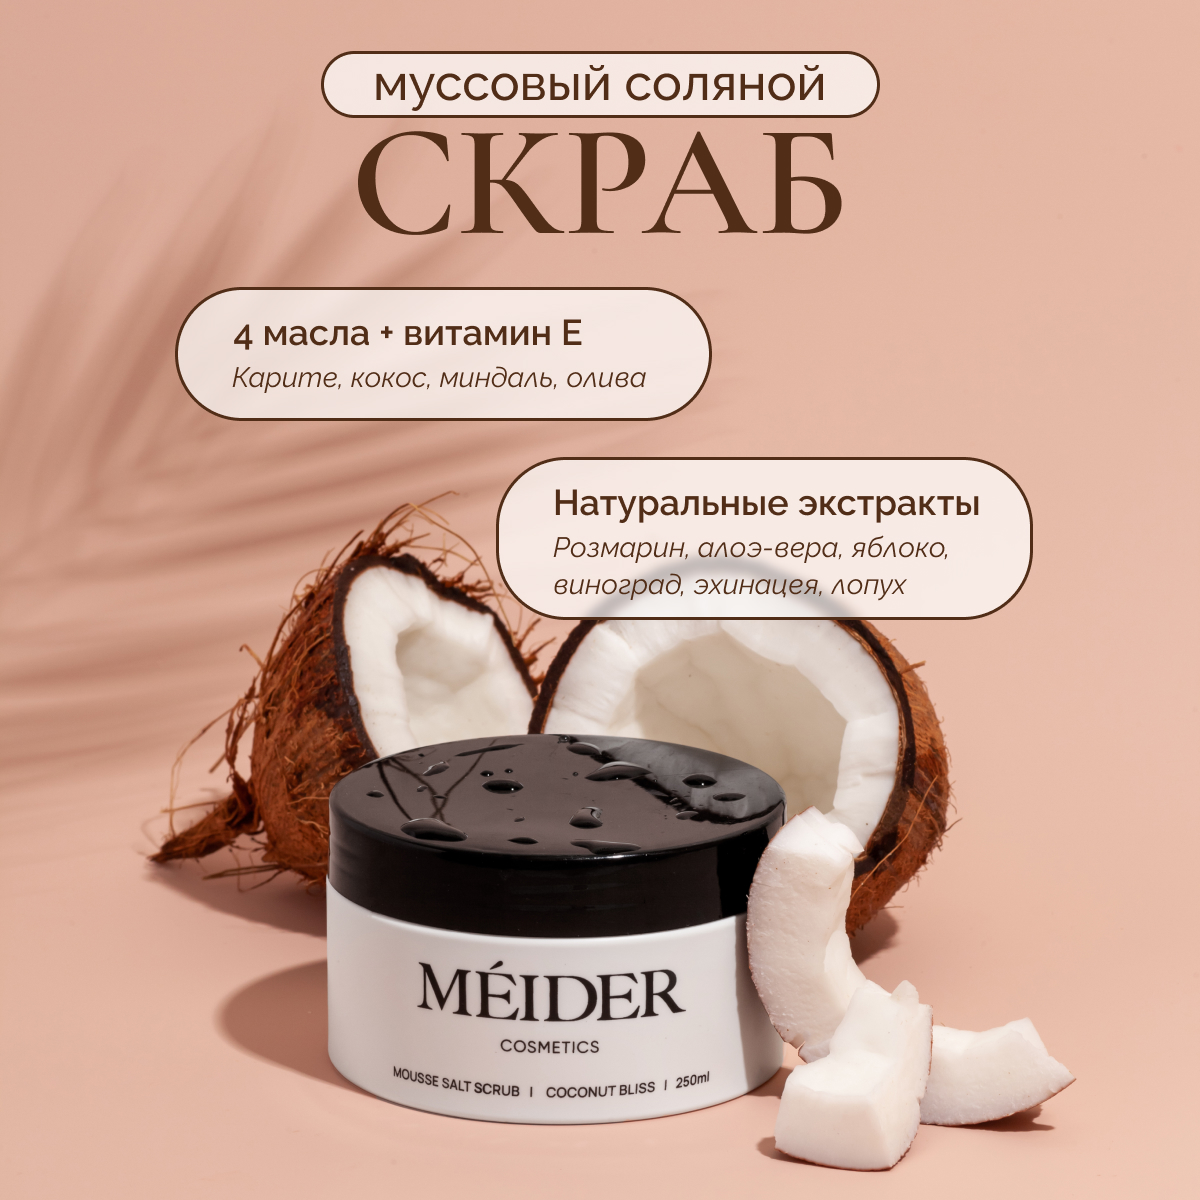 Соляной муссовый скраб для тела MEIDER Cosmetics Coconut Bliss кокос и масло карите, 300 г худшие подруги